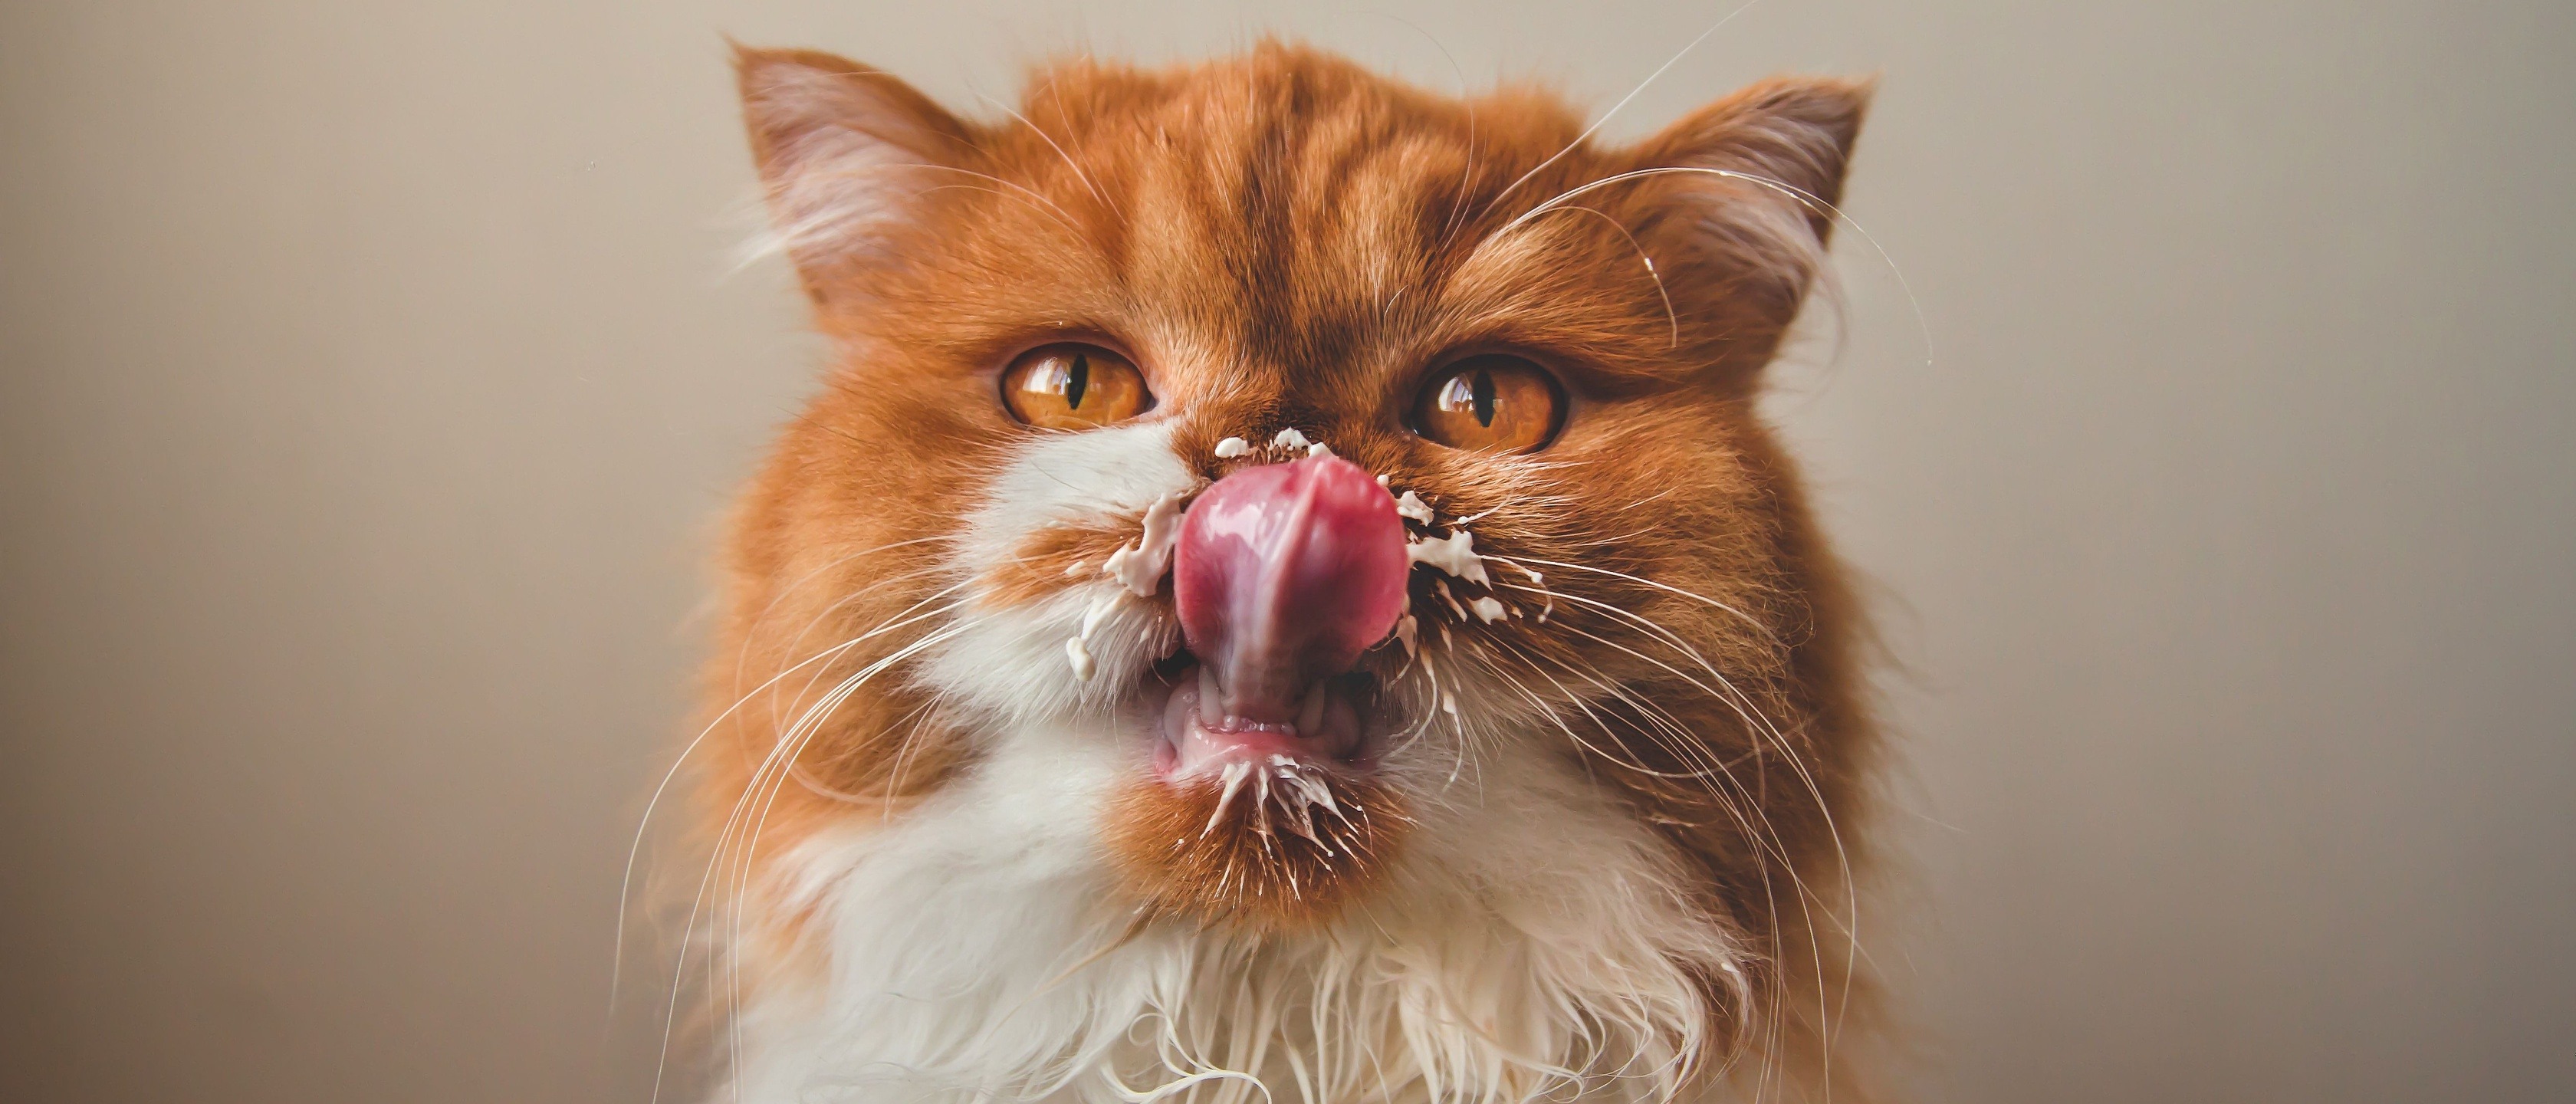 fidelidade alimentos proibidos para gatos